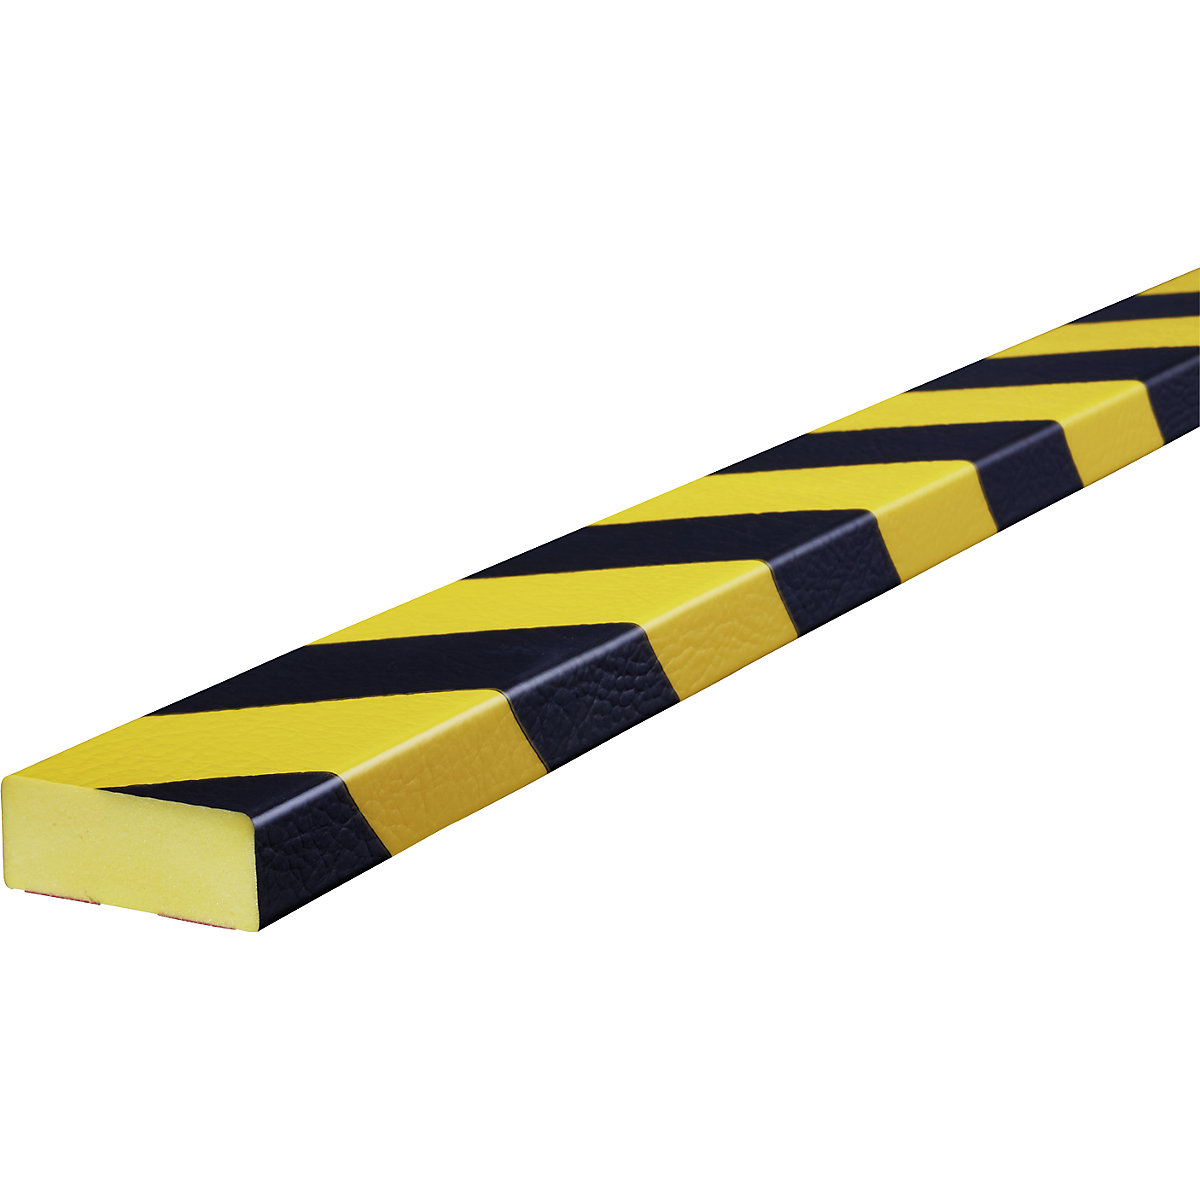 Knuffi®-oppervlaktebescherming – SHG, type D, 1 rol à 5 m, zwart/geel-20